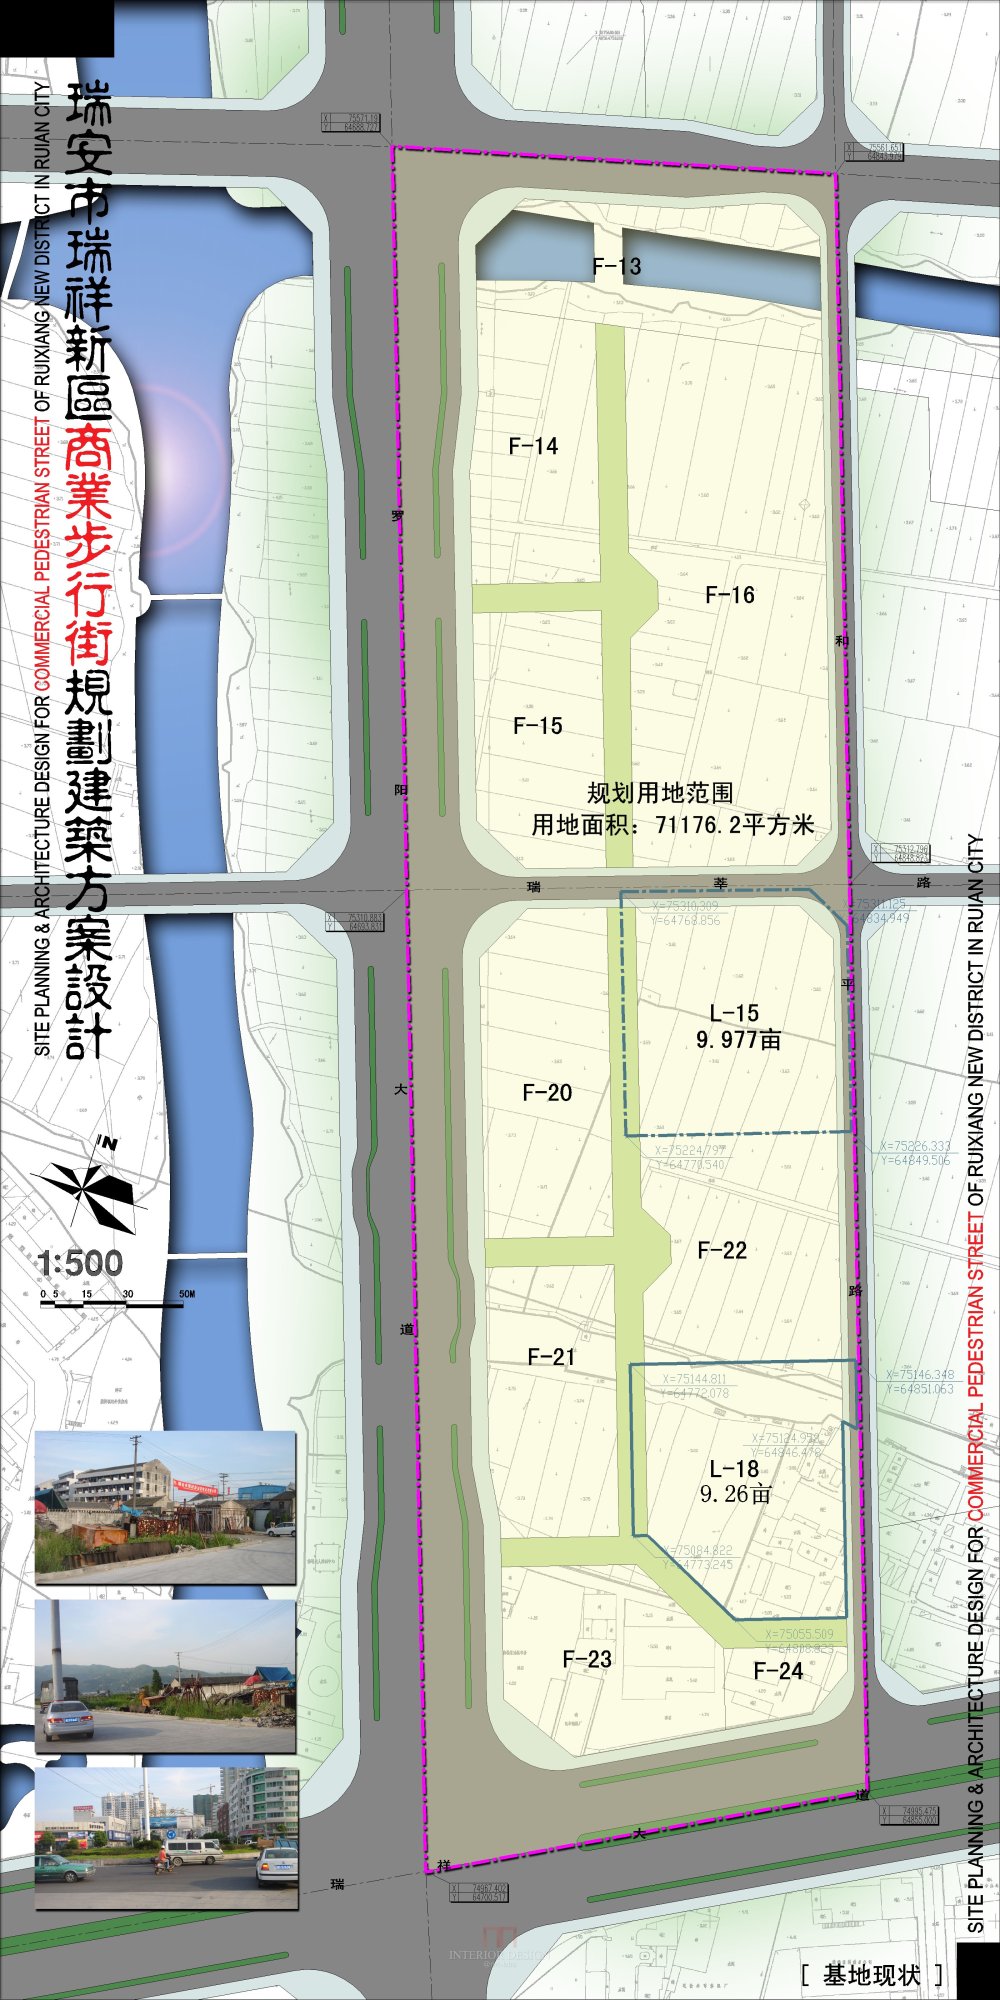 浙江瑞安新区商业步行街规划建筑设计方案_1-02瑞安商业街-基地现状.jpg